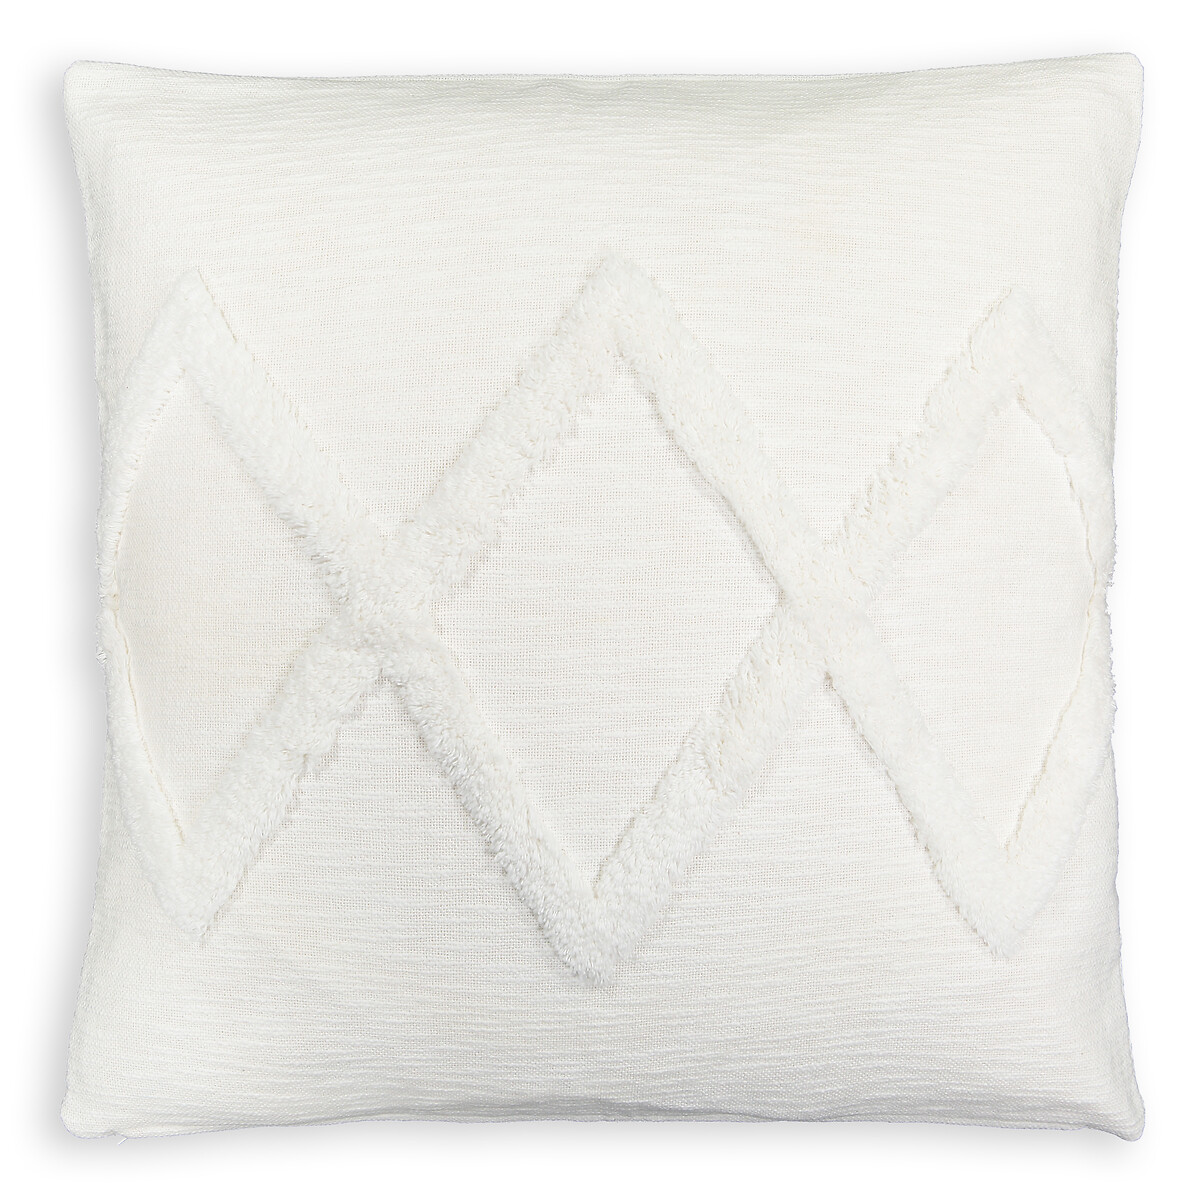 Assa 65 x 65cm 100% Tufted Cotton Pillow Cover